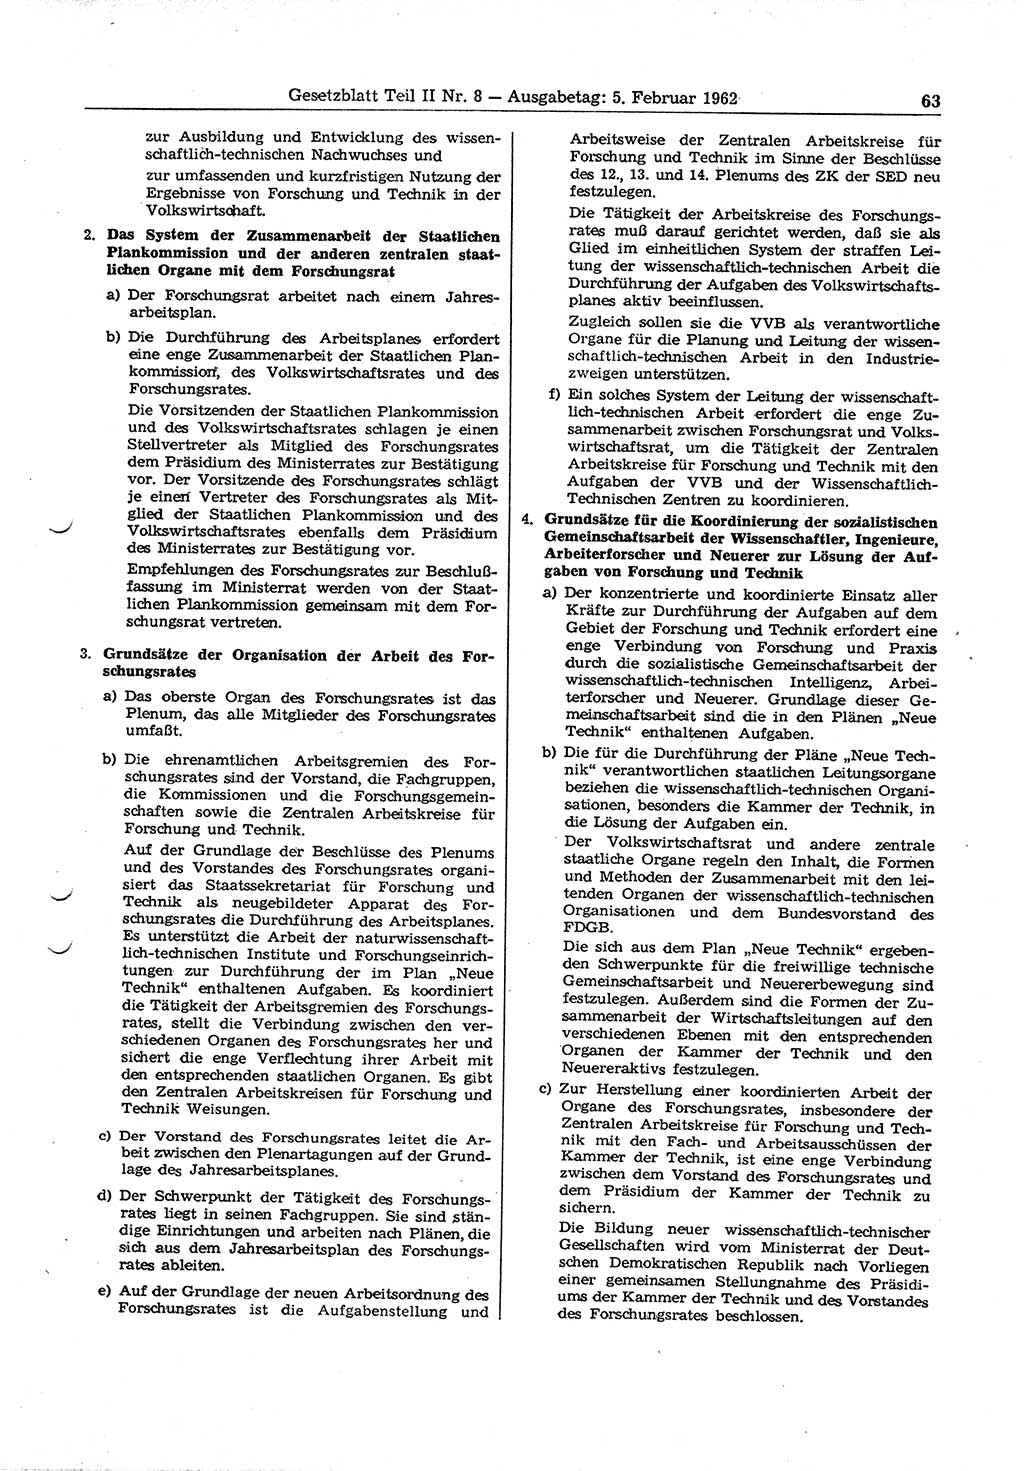 Gesetzblatt (GBl.) der Deutschen Demokratischen Republik (DDR) Teil ⅠⅠ 1962, Seite 63 (GBl. DDR ⅠⅠ 1962, S. 63)